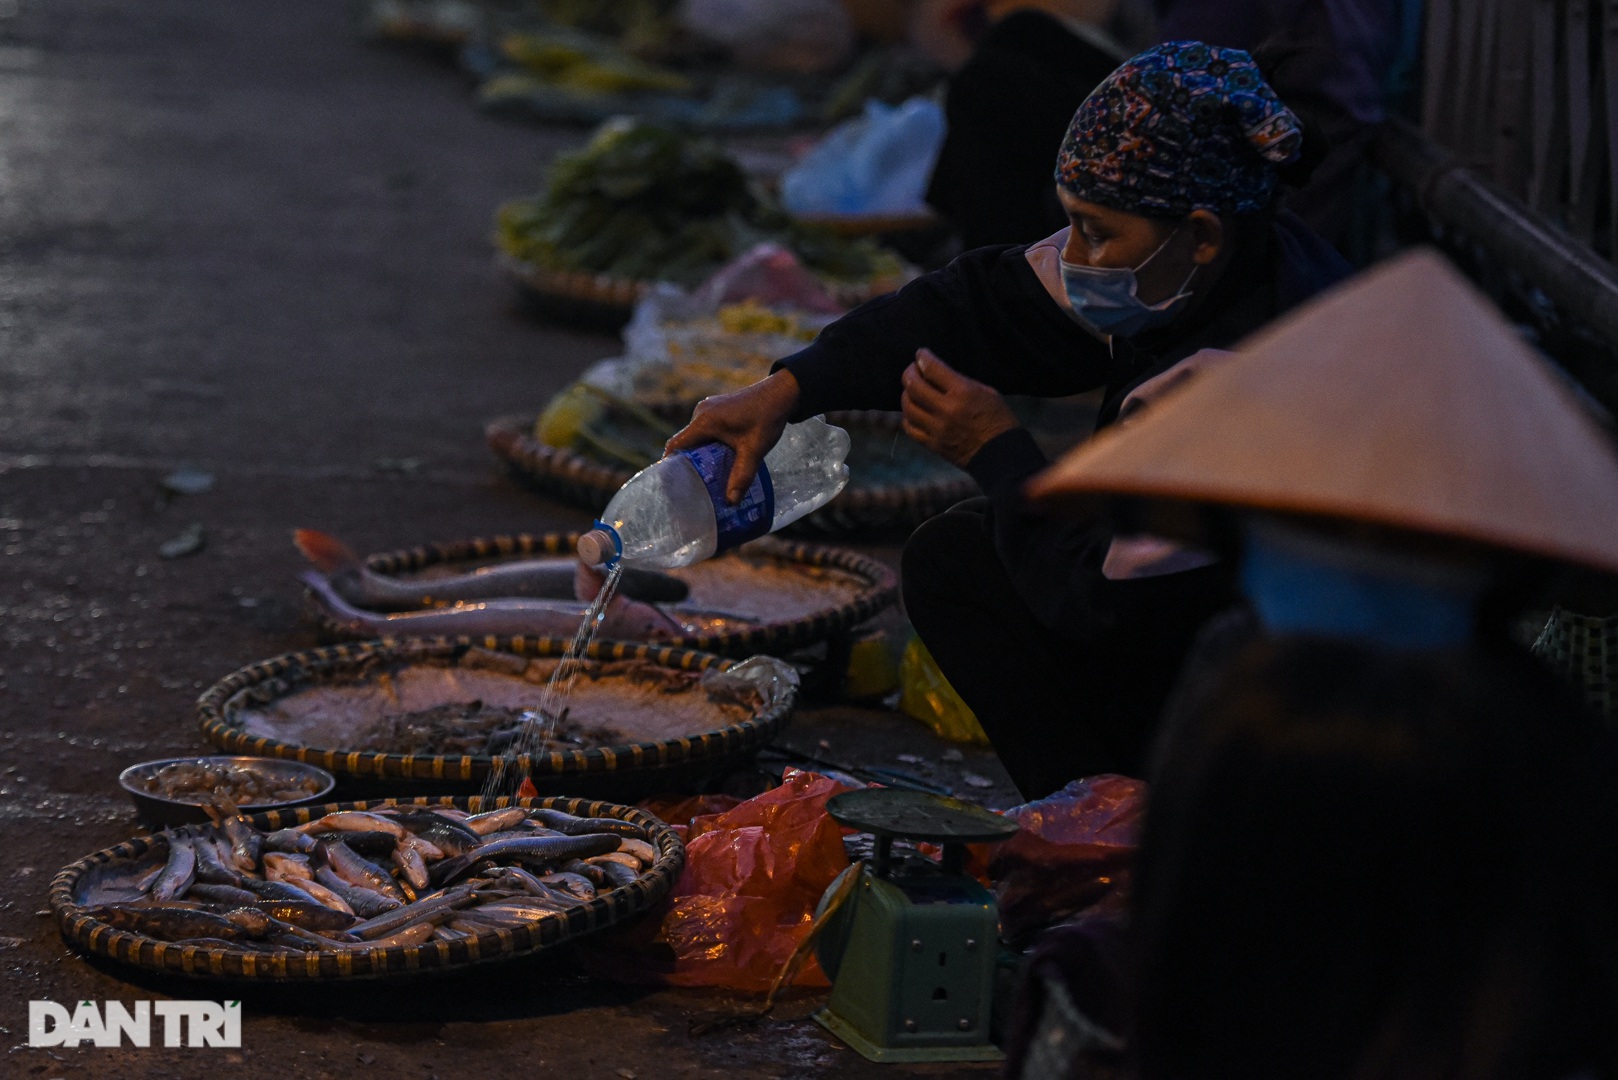 Cảnh họp chợ lộn xộn, giao thông ùn ứ trên cây cầu trăm tuổi ở Hà Nội - 4